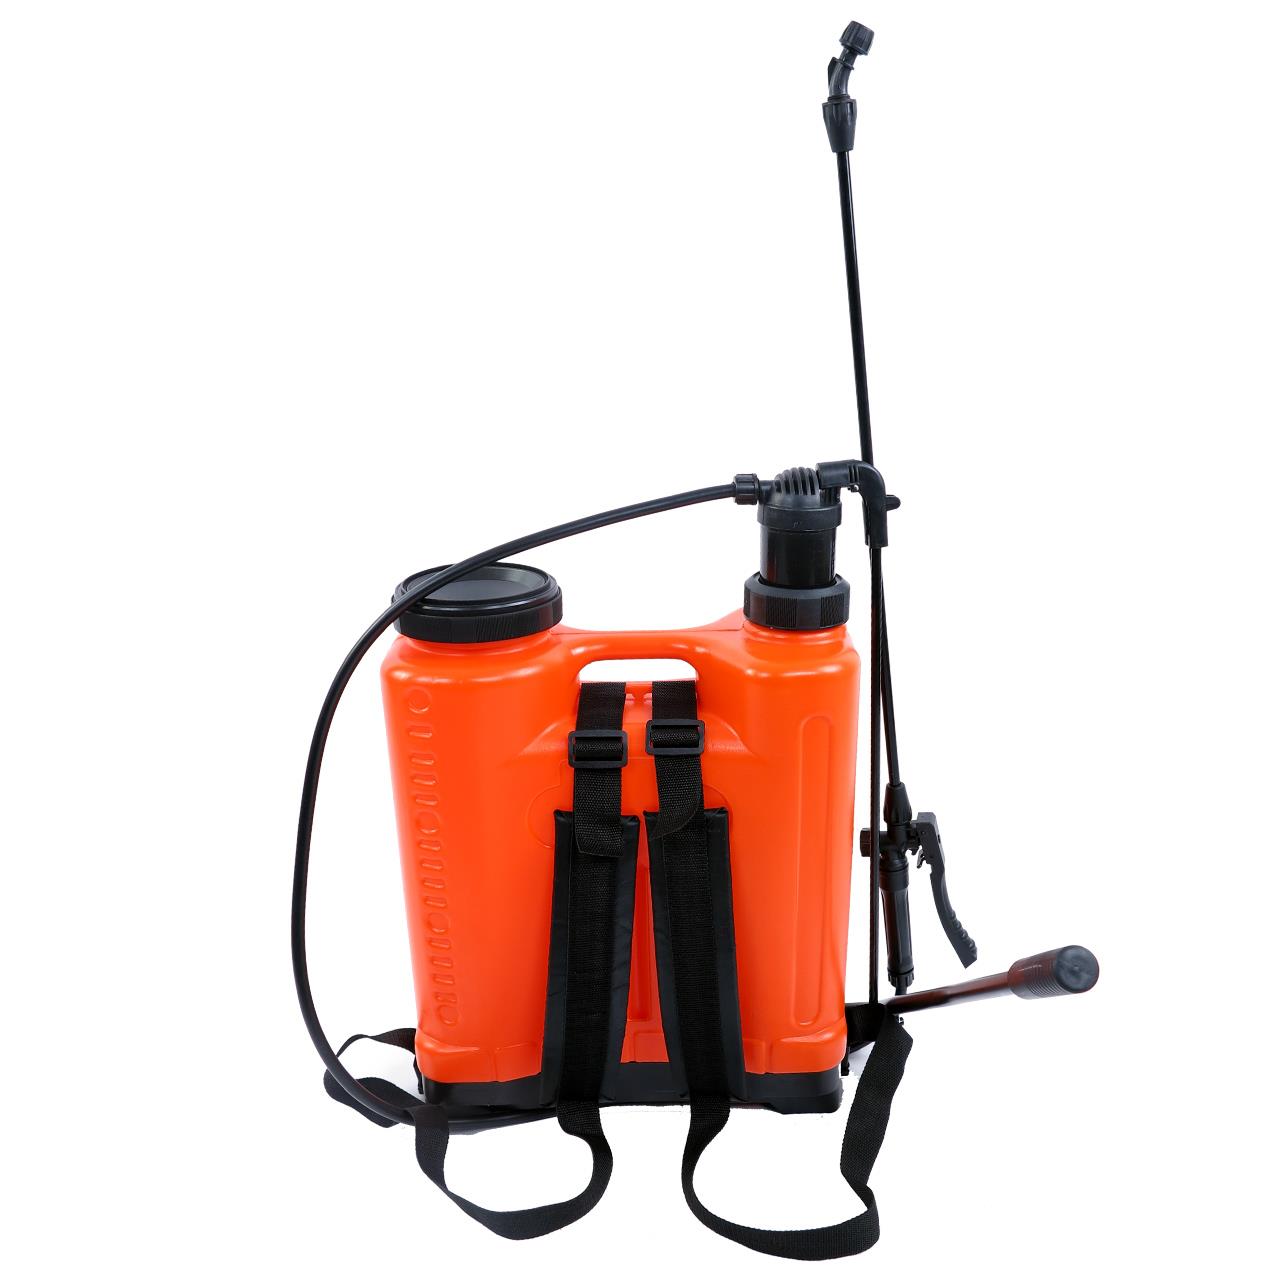 FUXTEC pressure sprayer 20 litres FX-DS20L